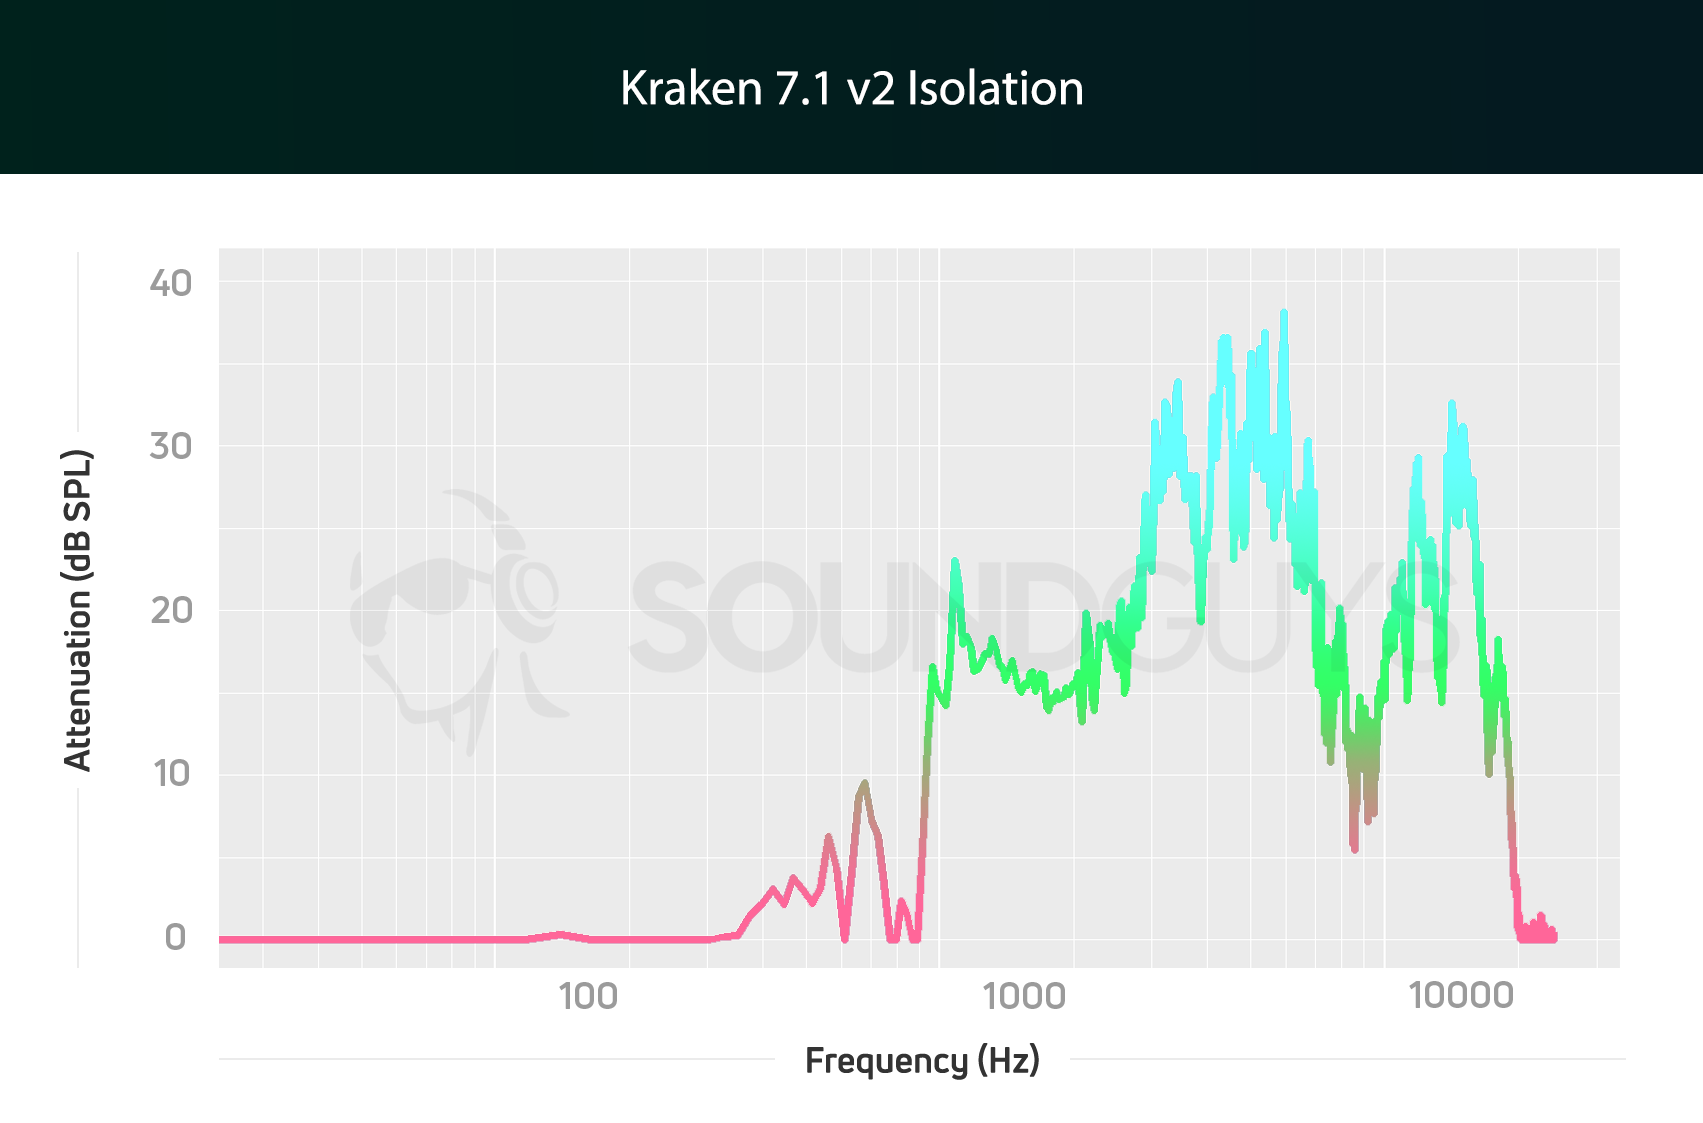 Kraken 7.1 v2 isolation chart